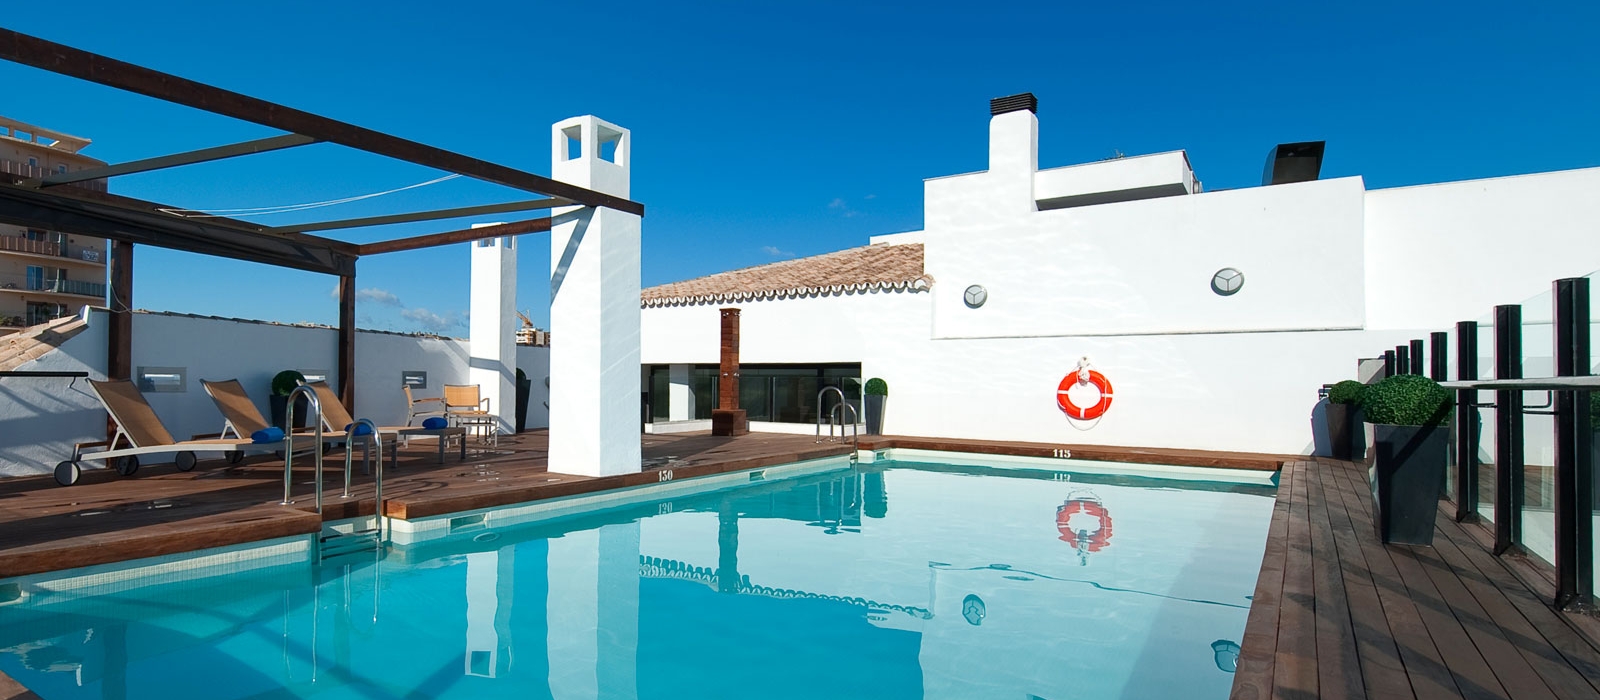 Servicios Hotel Málaga Posada del patio - Vincci Hoteles - Plunge pool